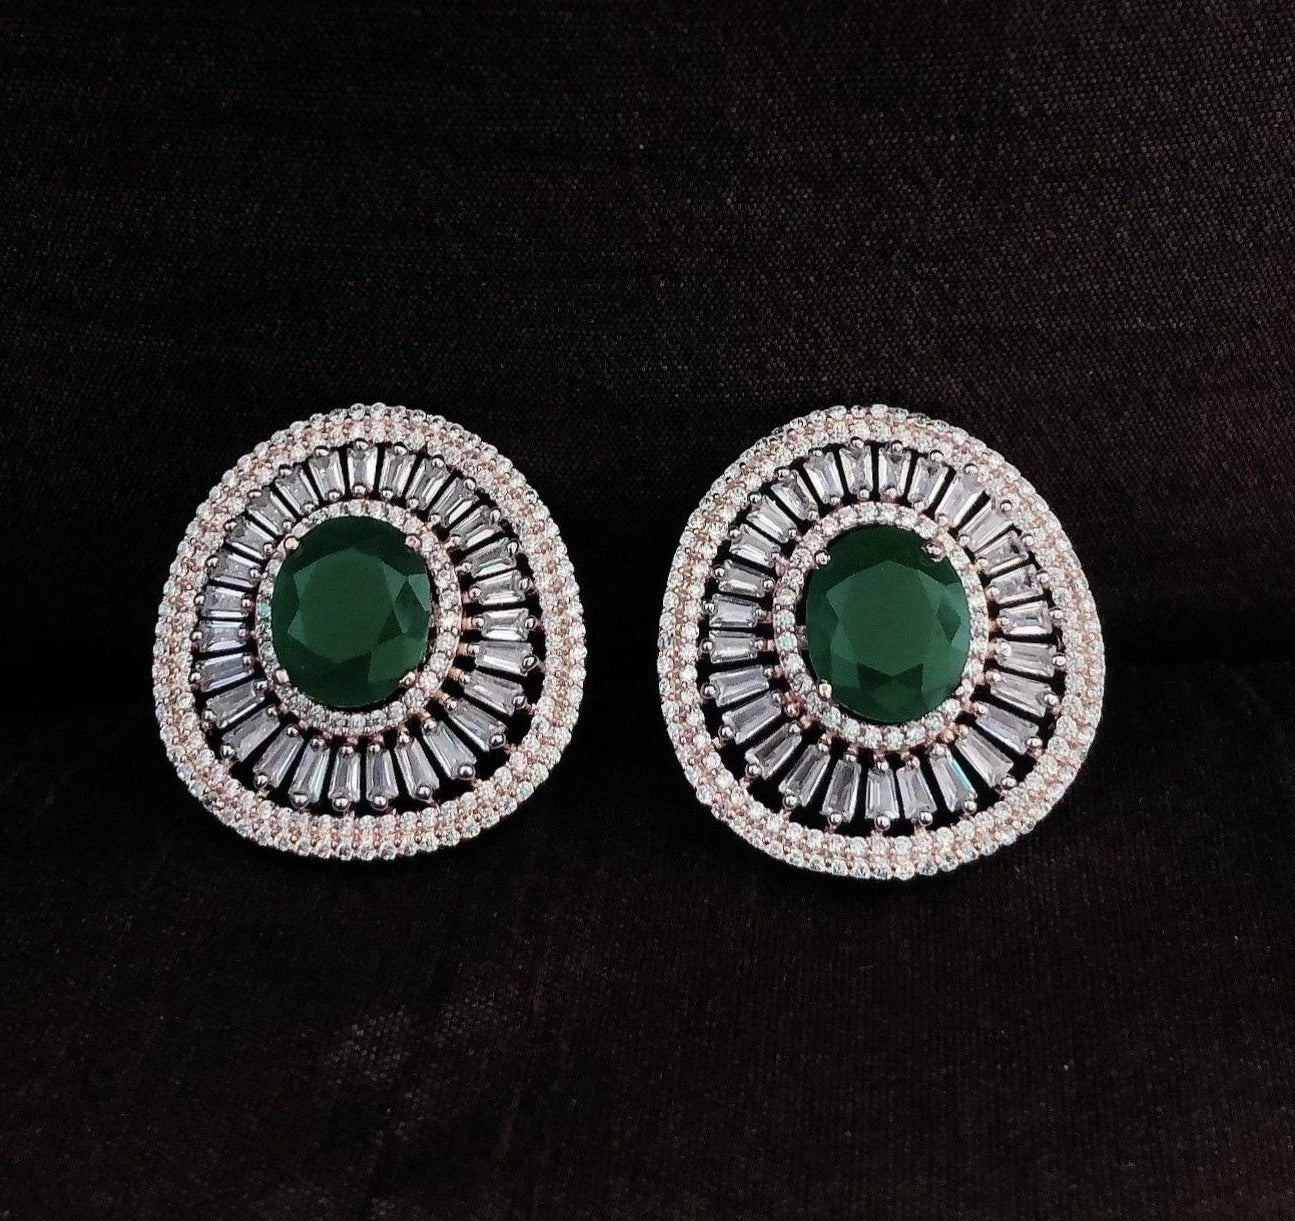 Emerald Green Diamond Stud Earrings